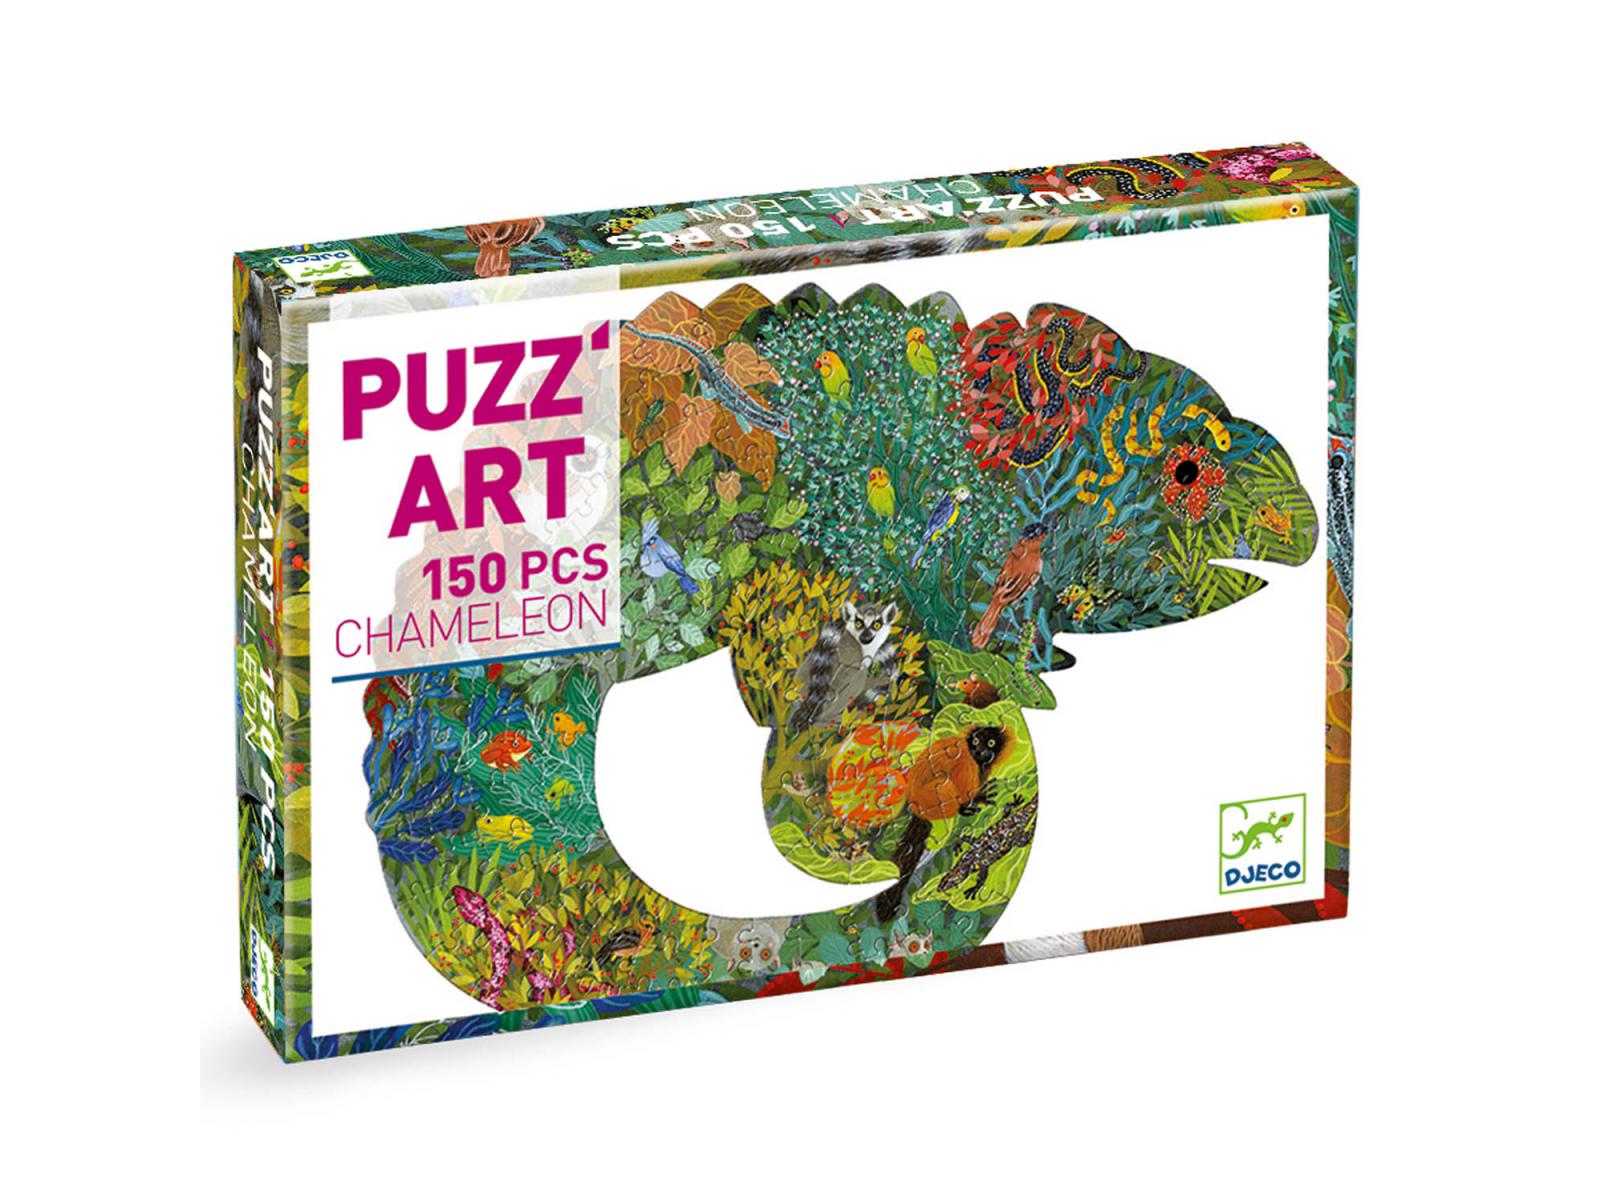 Chameleon Puzzle Art 150 Piece Puzzle